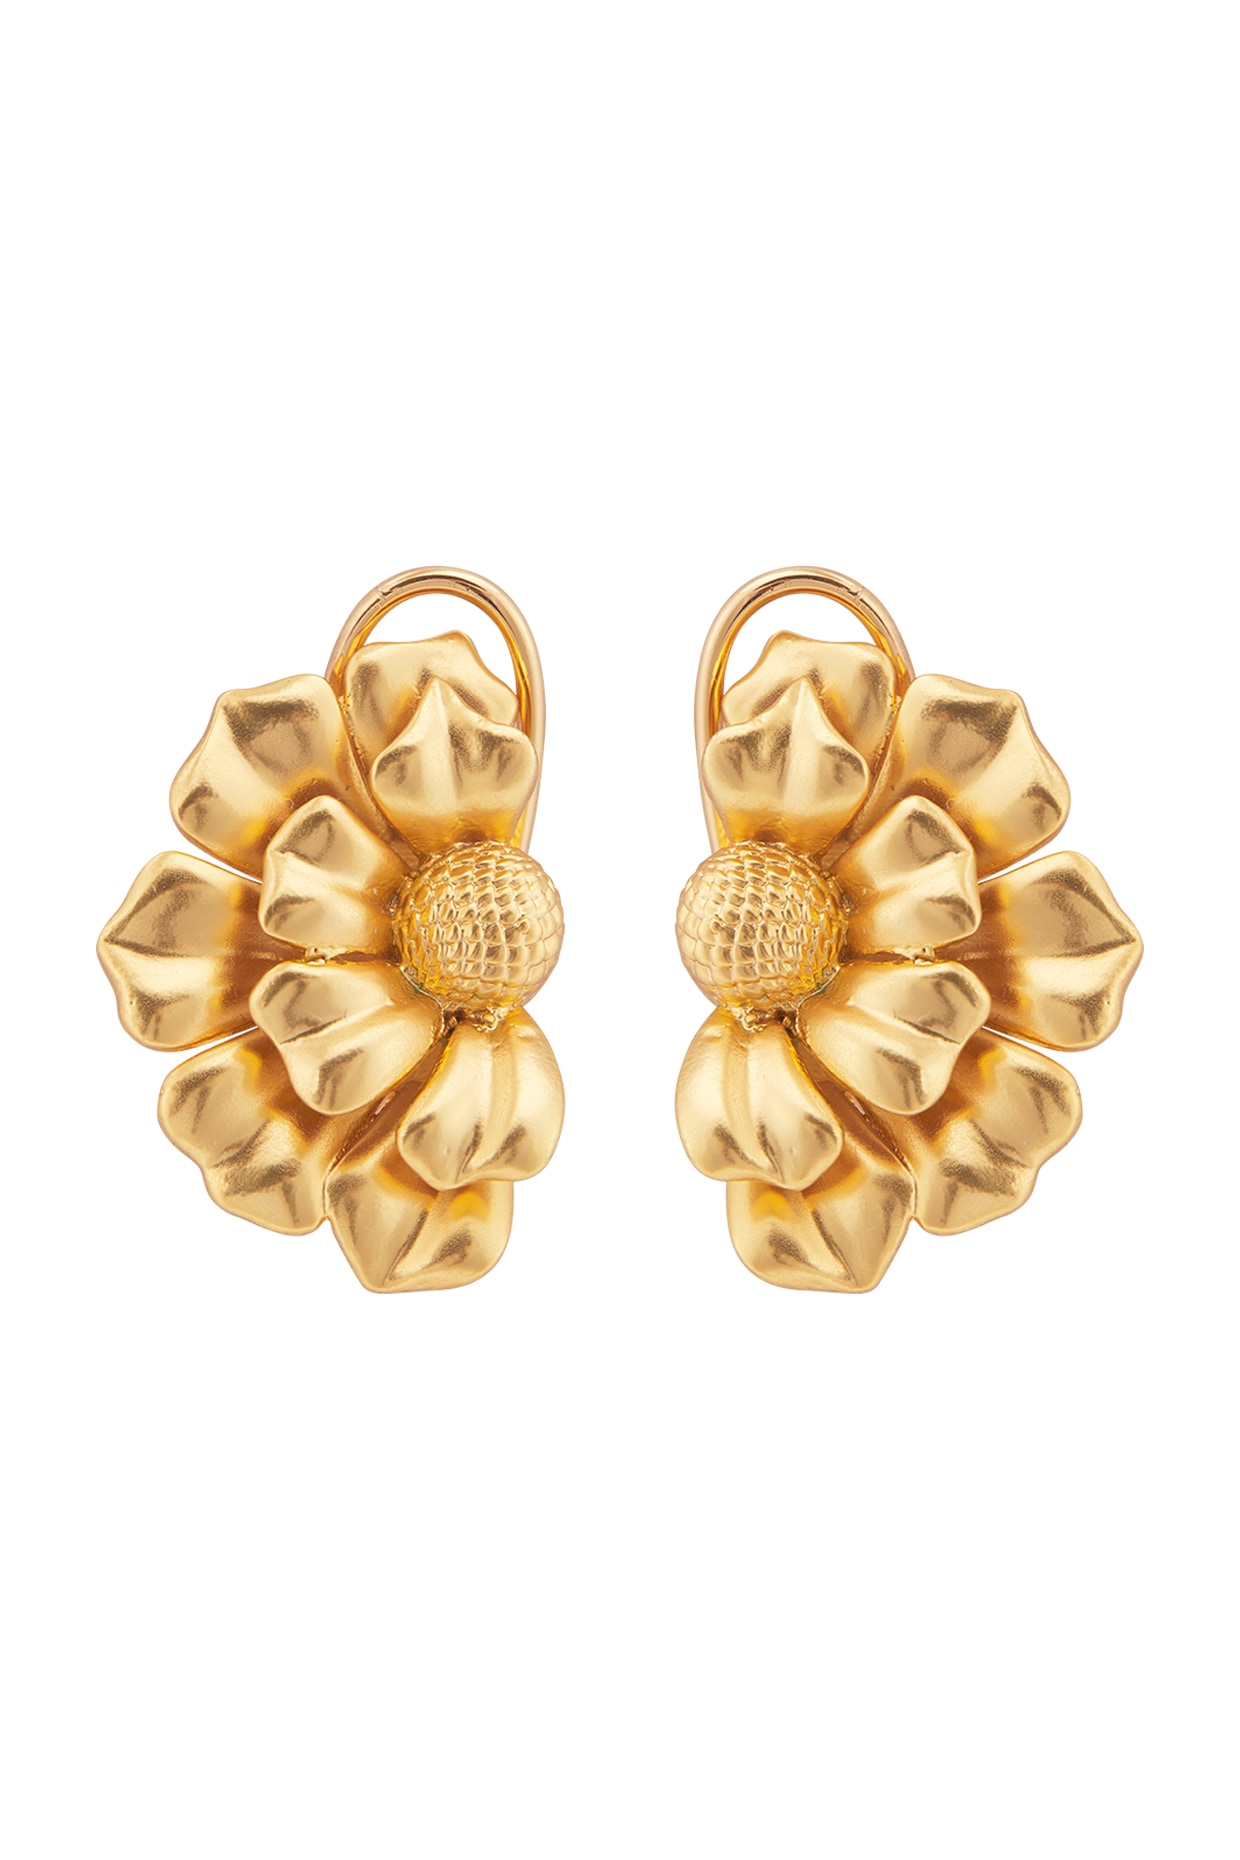 Matte Gold Hoop Earrings with Oval Hoop Dangle 203u – The Jewelry Junkie